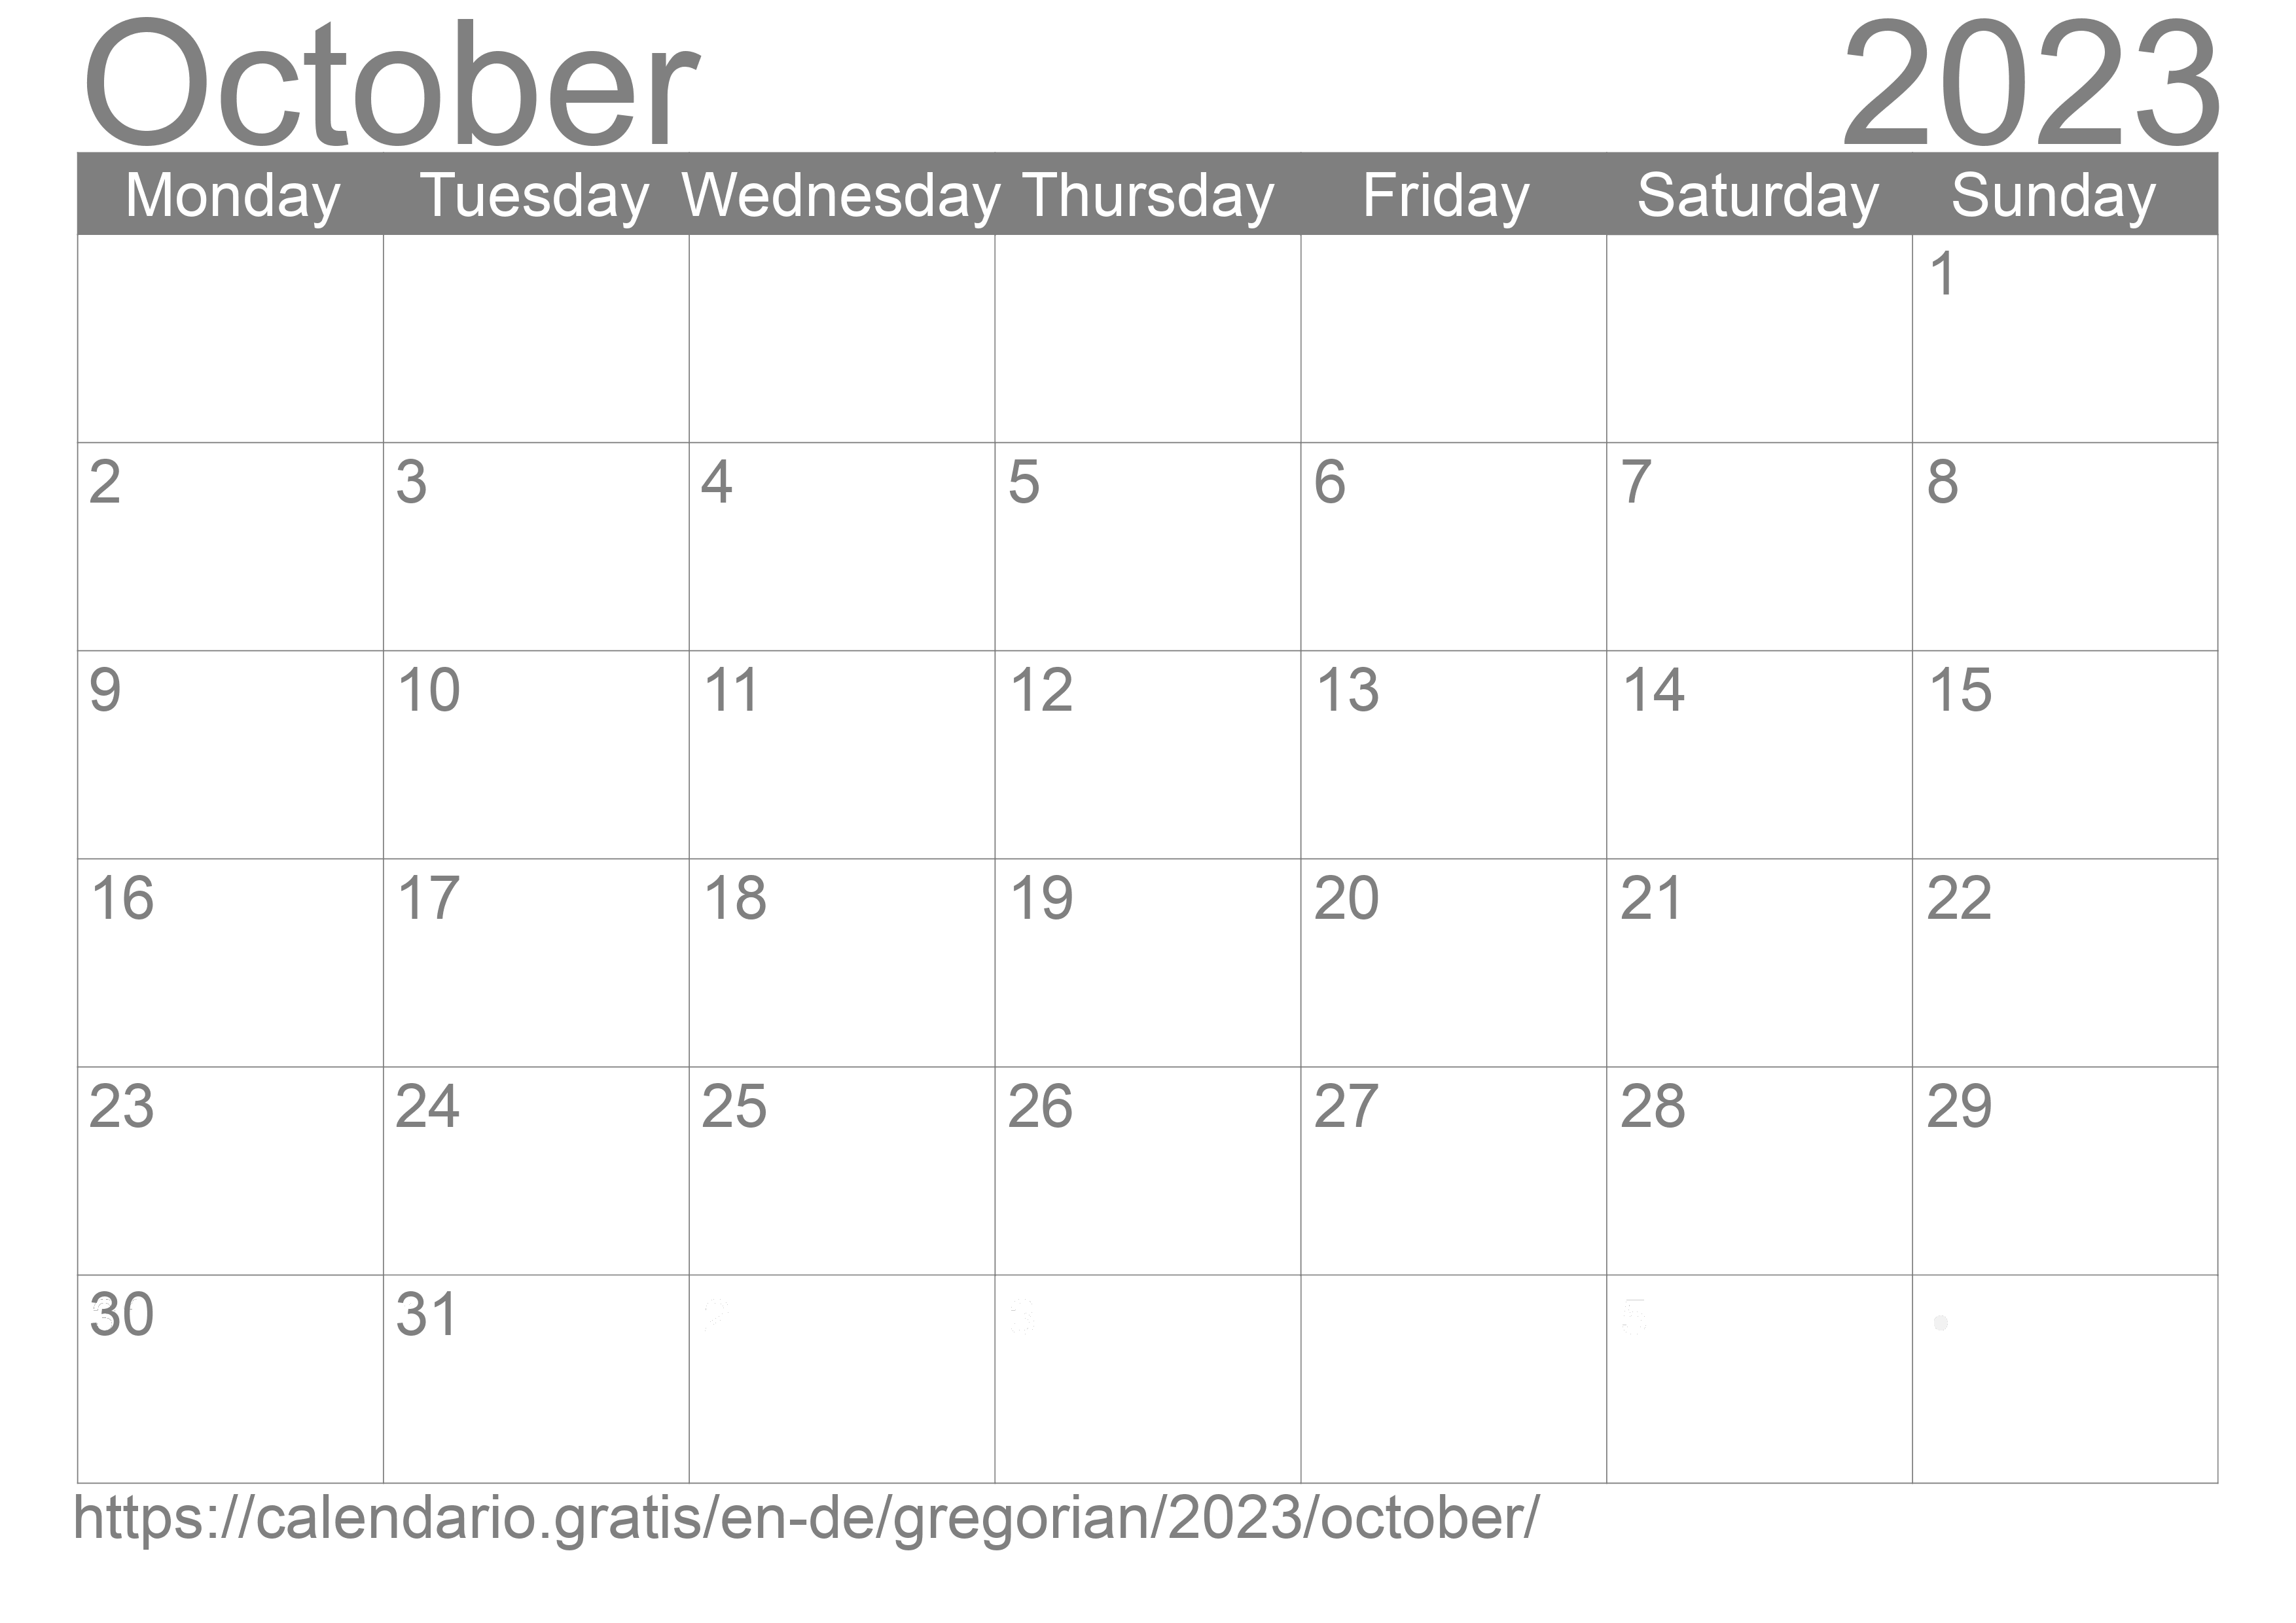 Calendar October 2023 to print